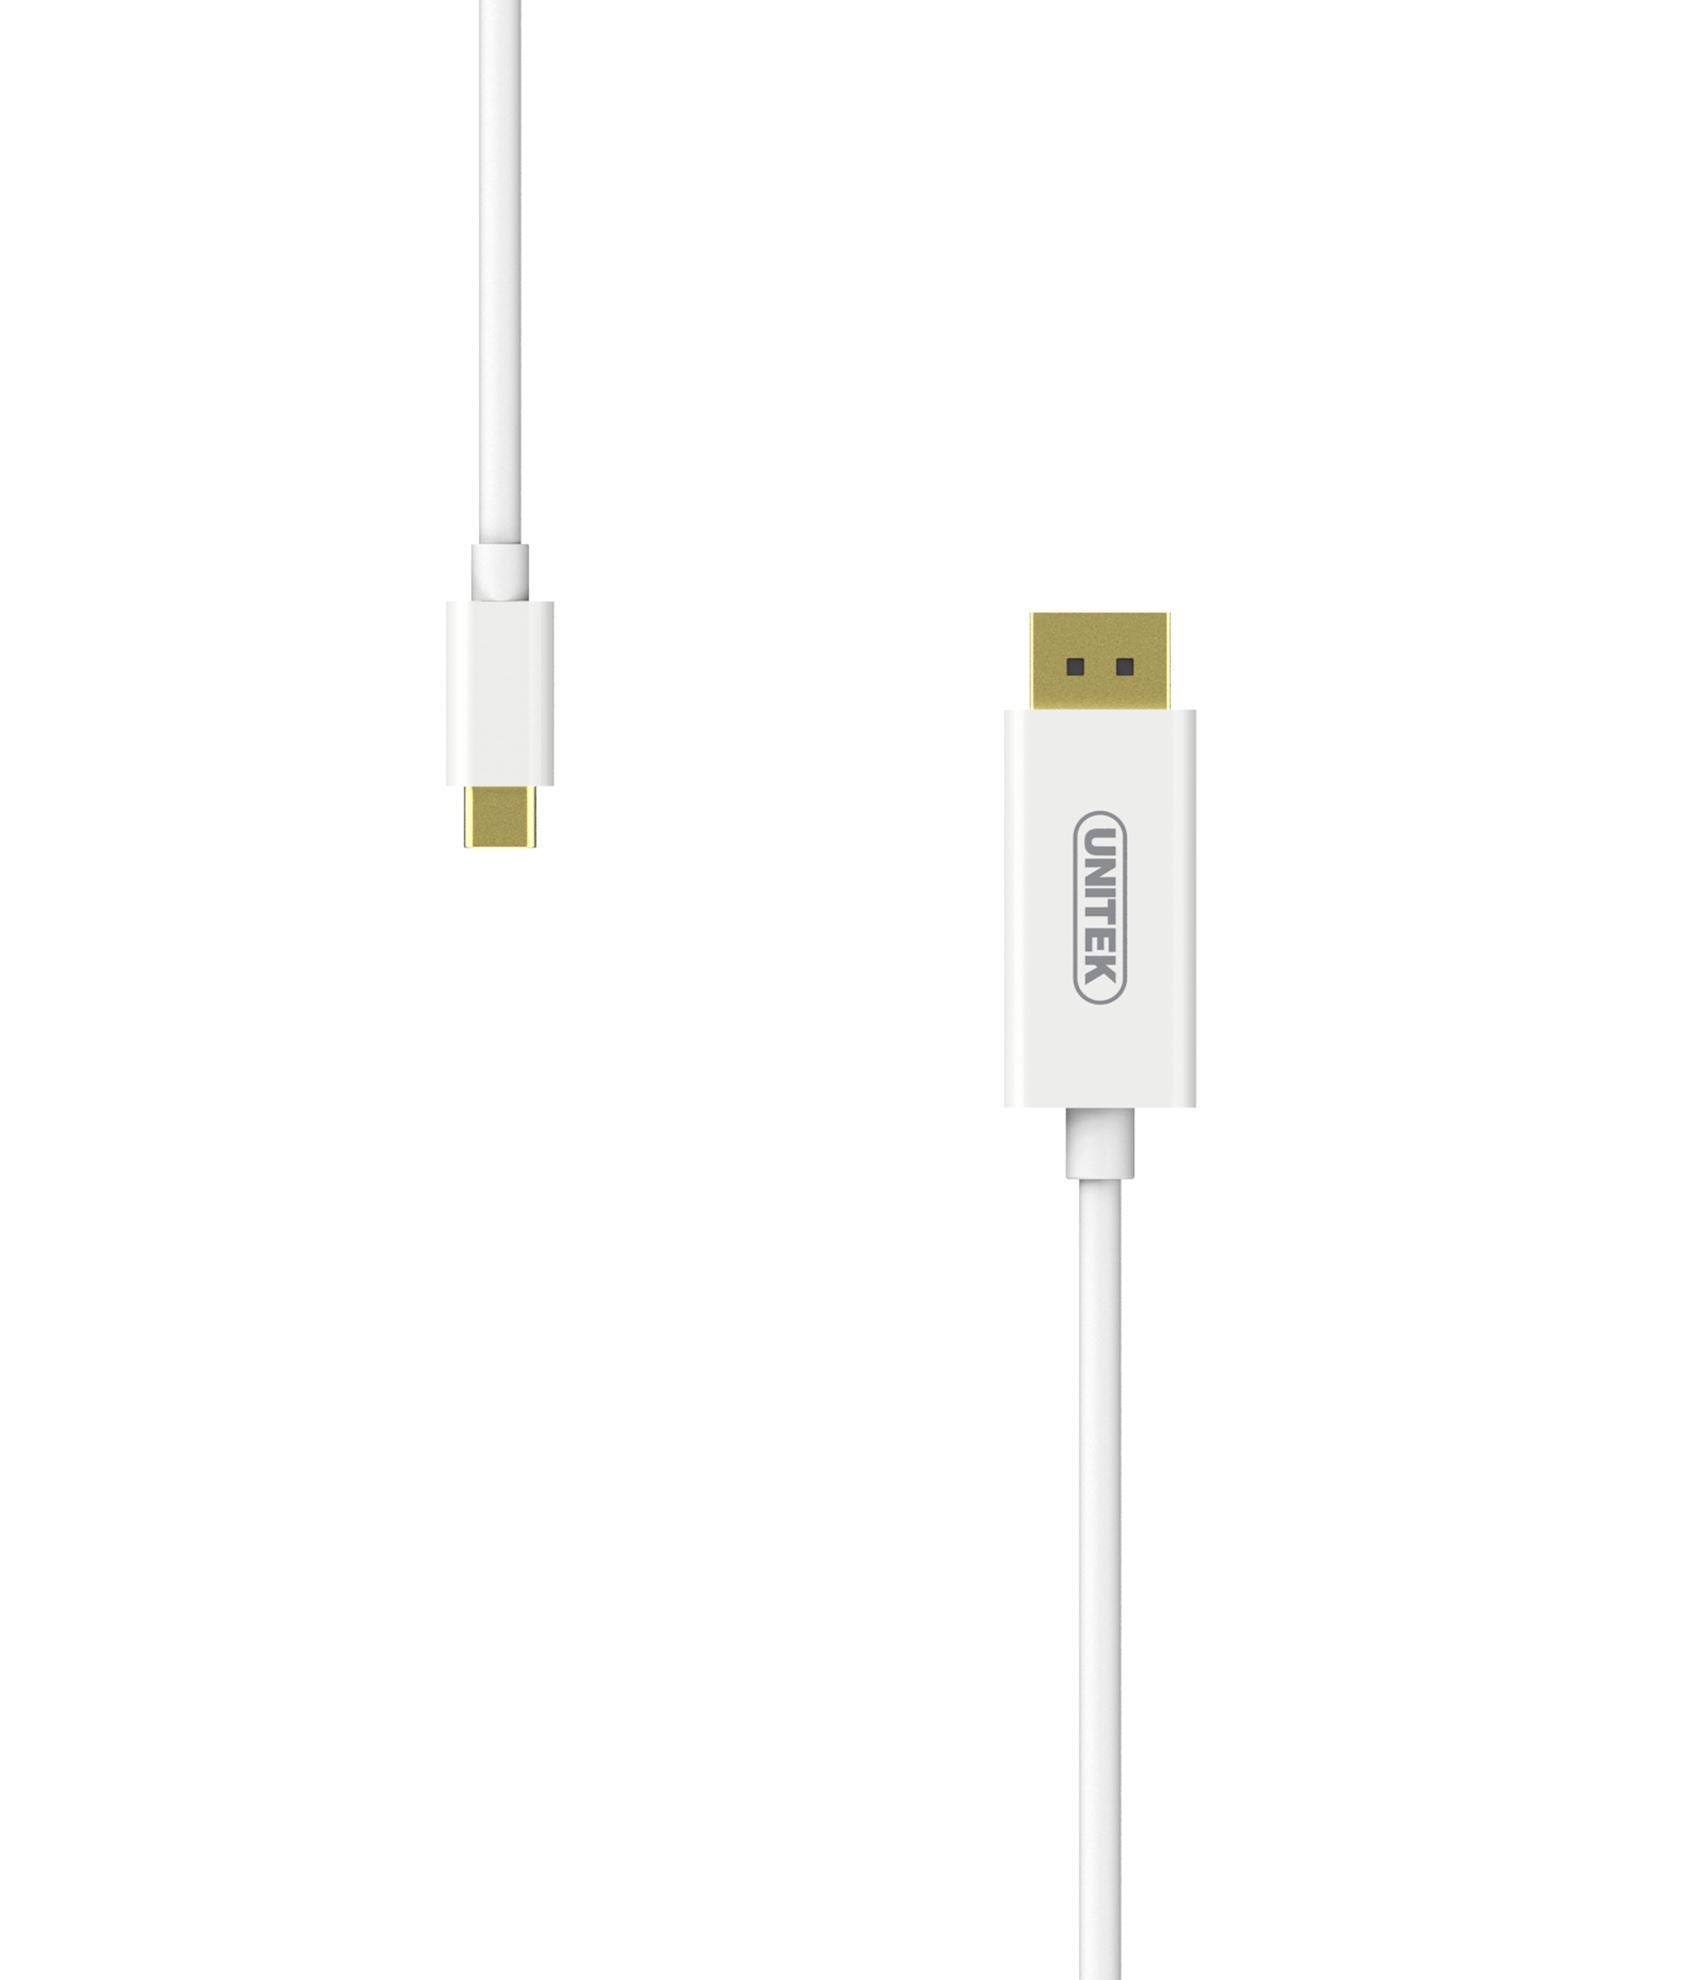 UNITEK 1.8m 4K USB-C to DisplayPort 1.2 Cable in White Plastic Housing.